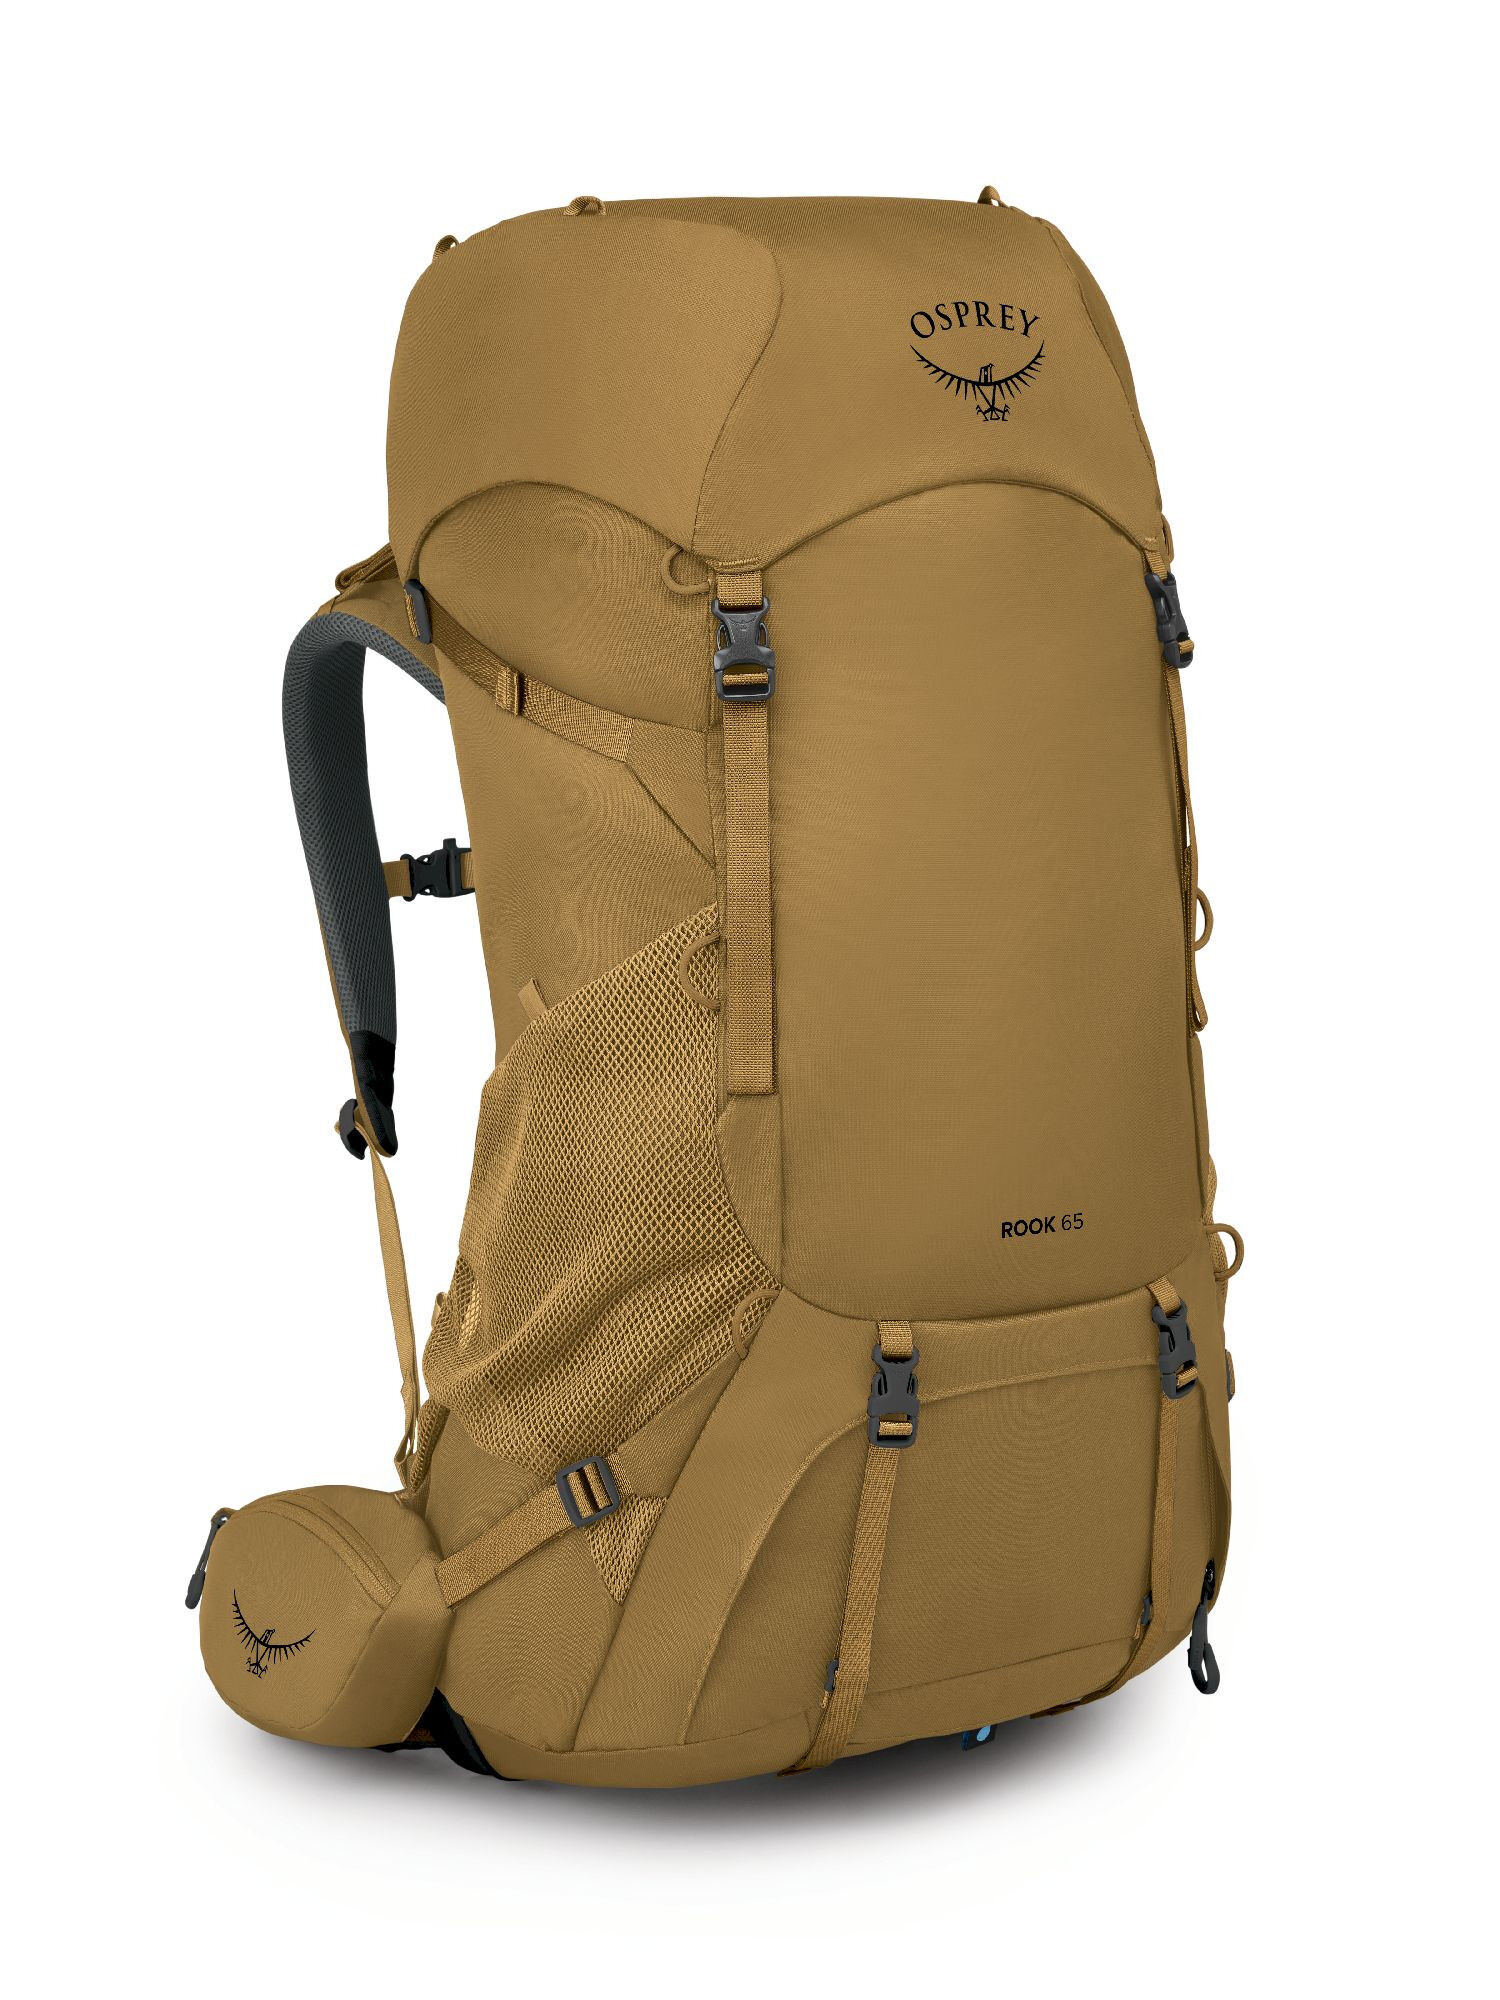 Osprey Rook 65 - Hiking backpack - Men's | Hardloop